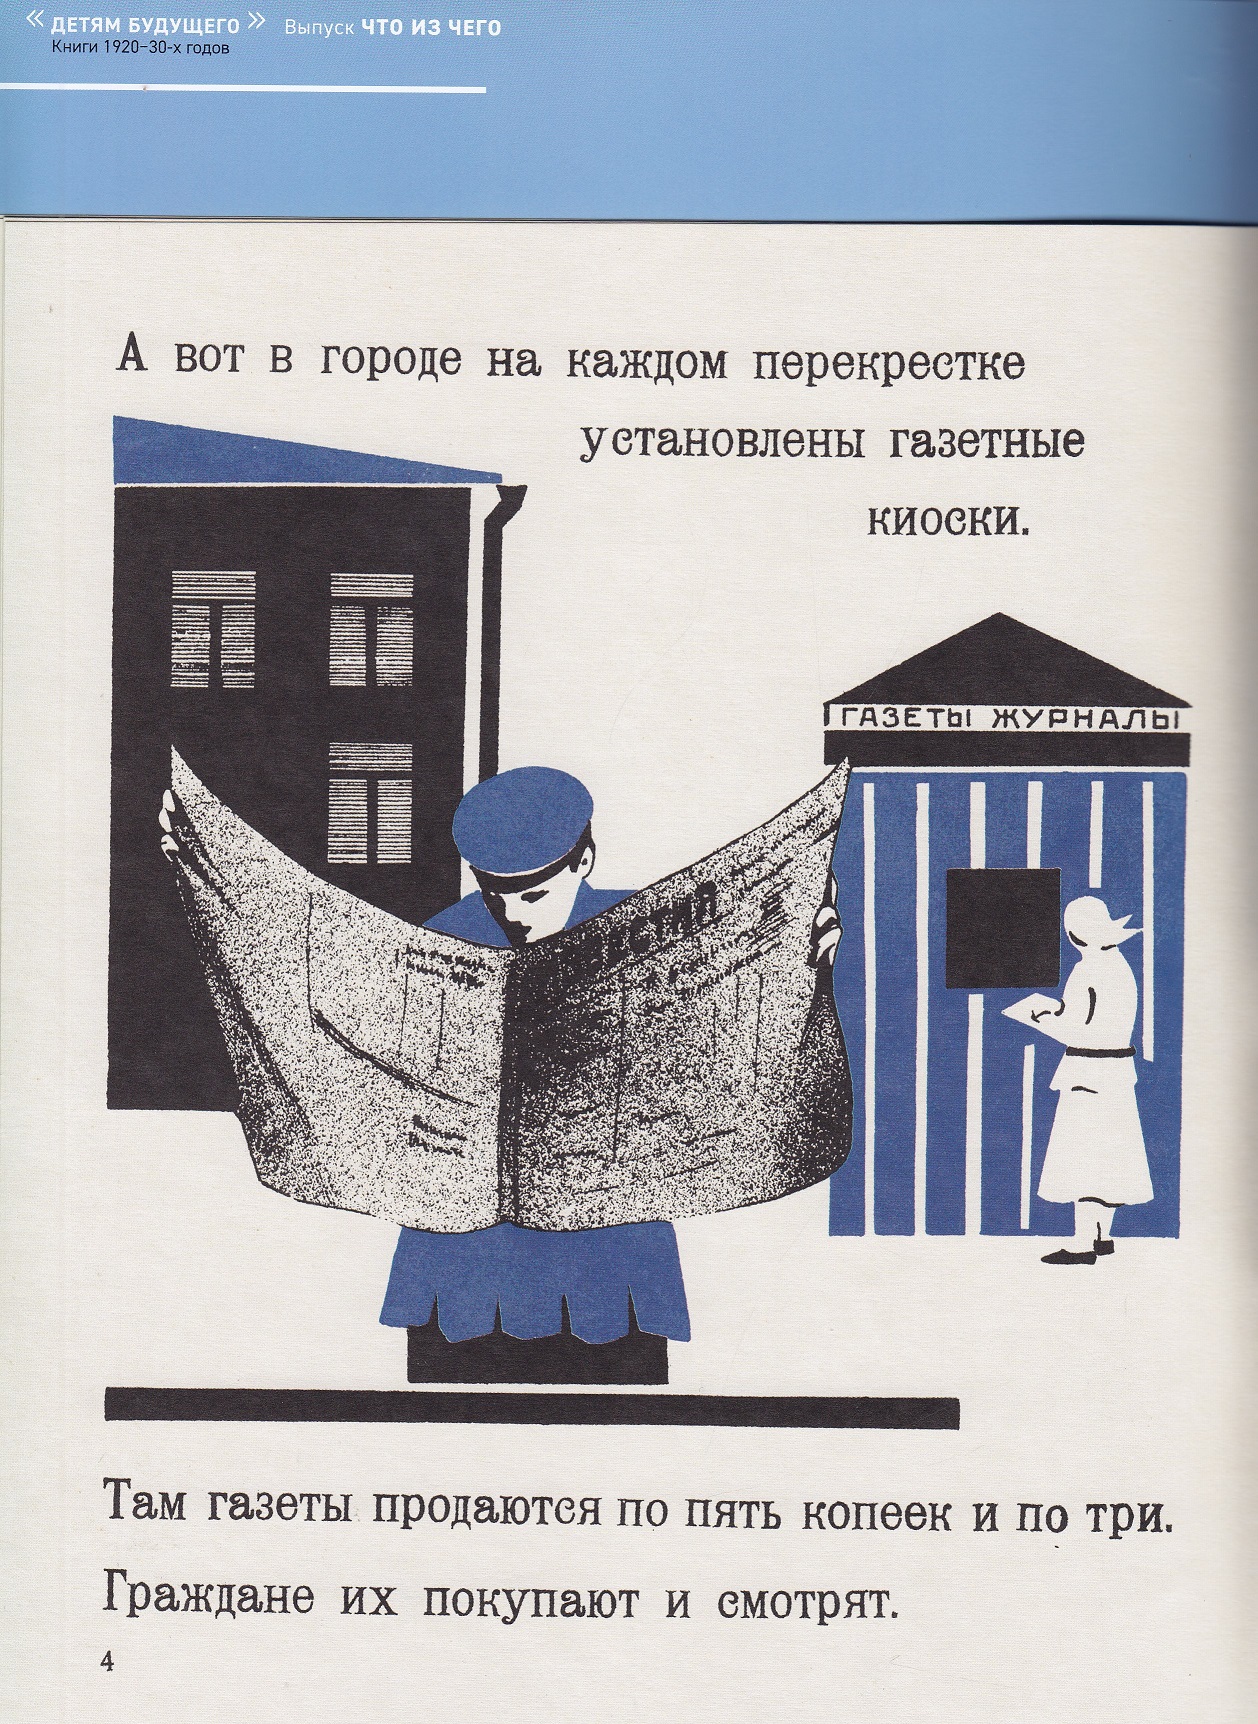 Нажмите для увеличения. «Что из чего» Детям о газете Н. Г. Смирнов (фото книги из фонда библиотеки) 